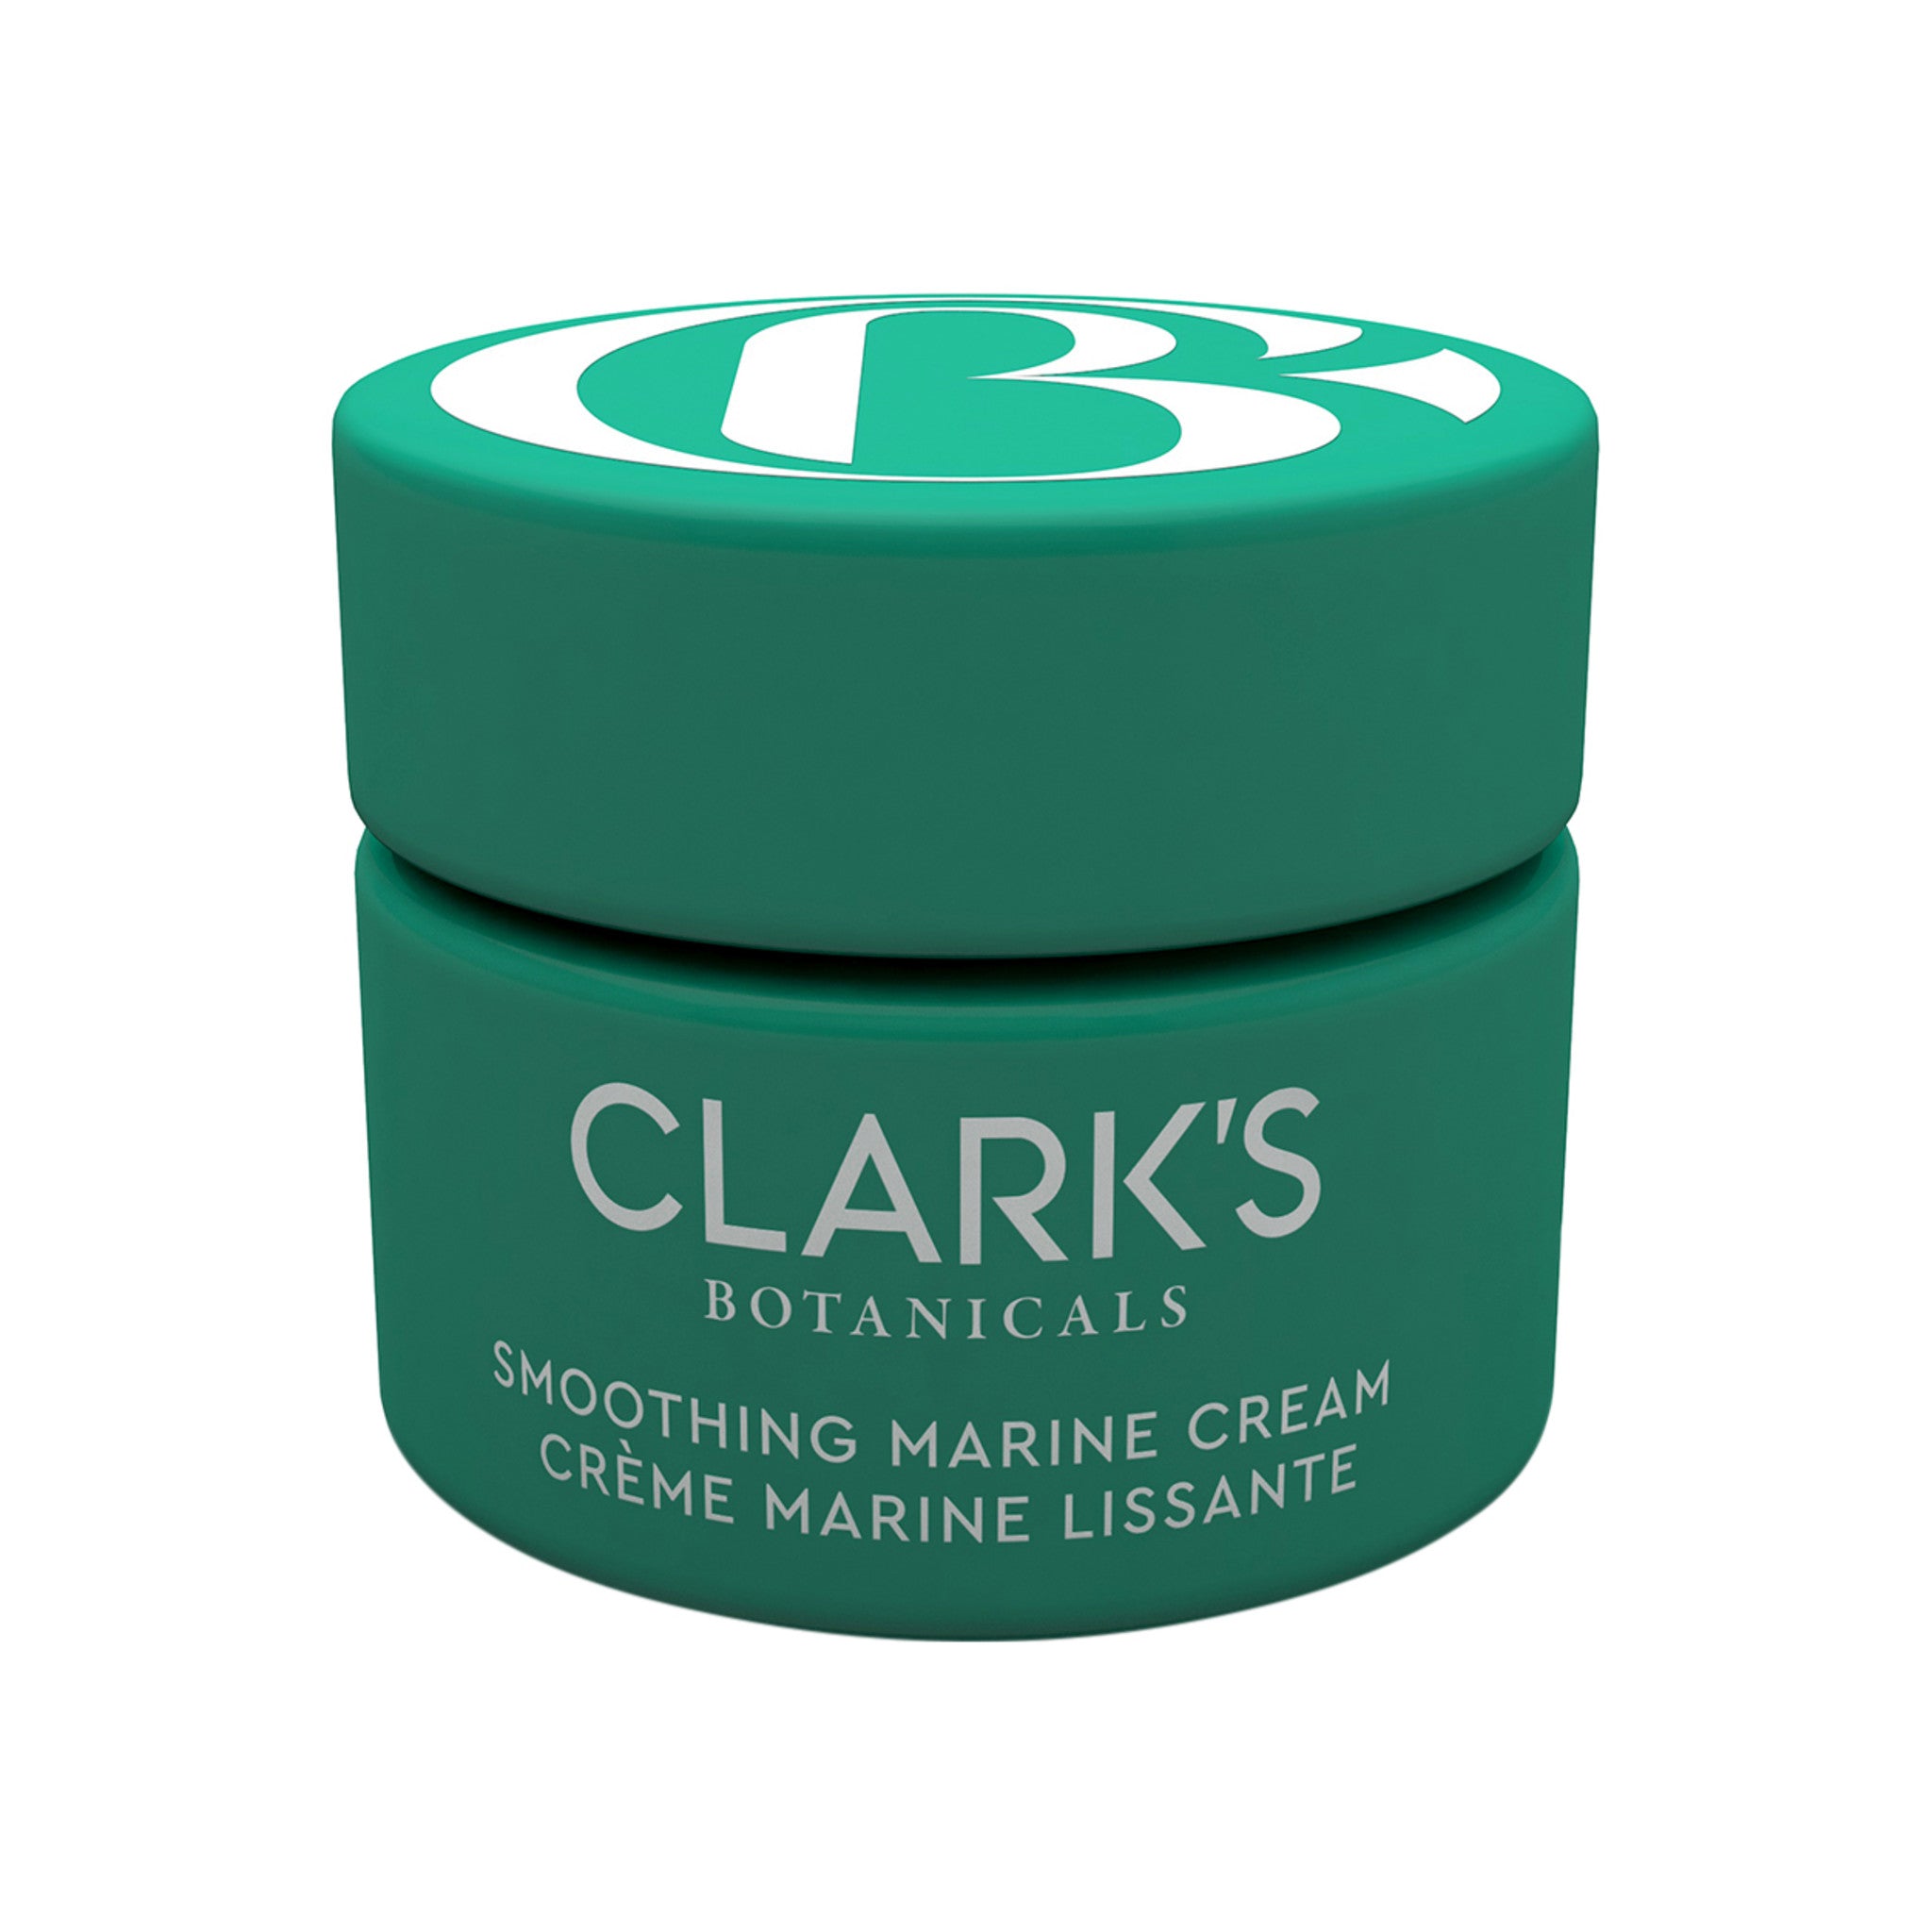 Clark's Botanical Smoothing Marine Cream main image.